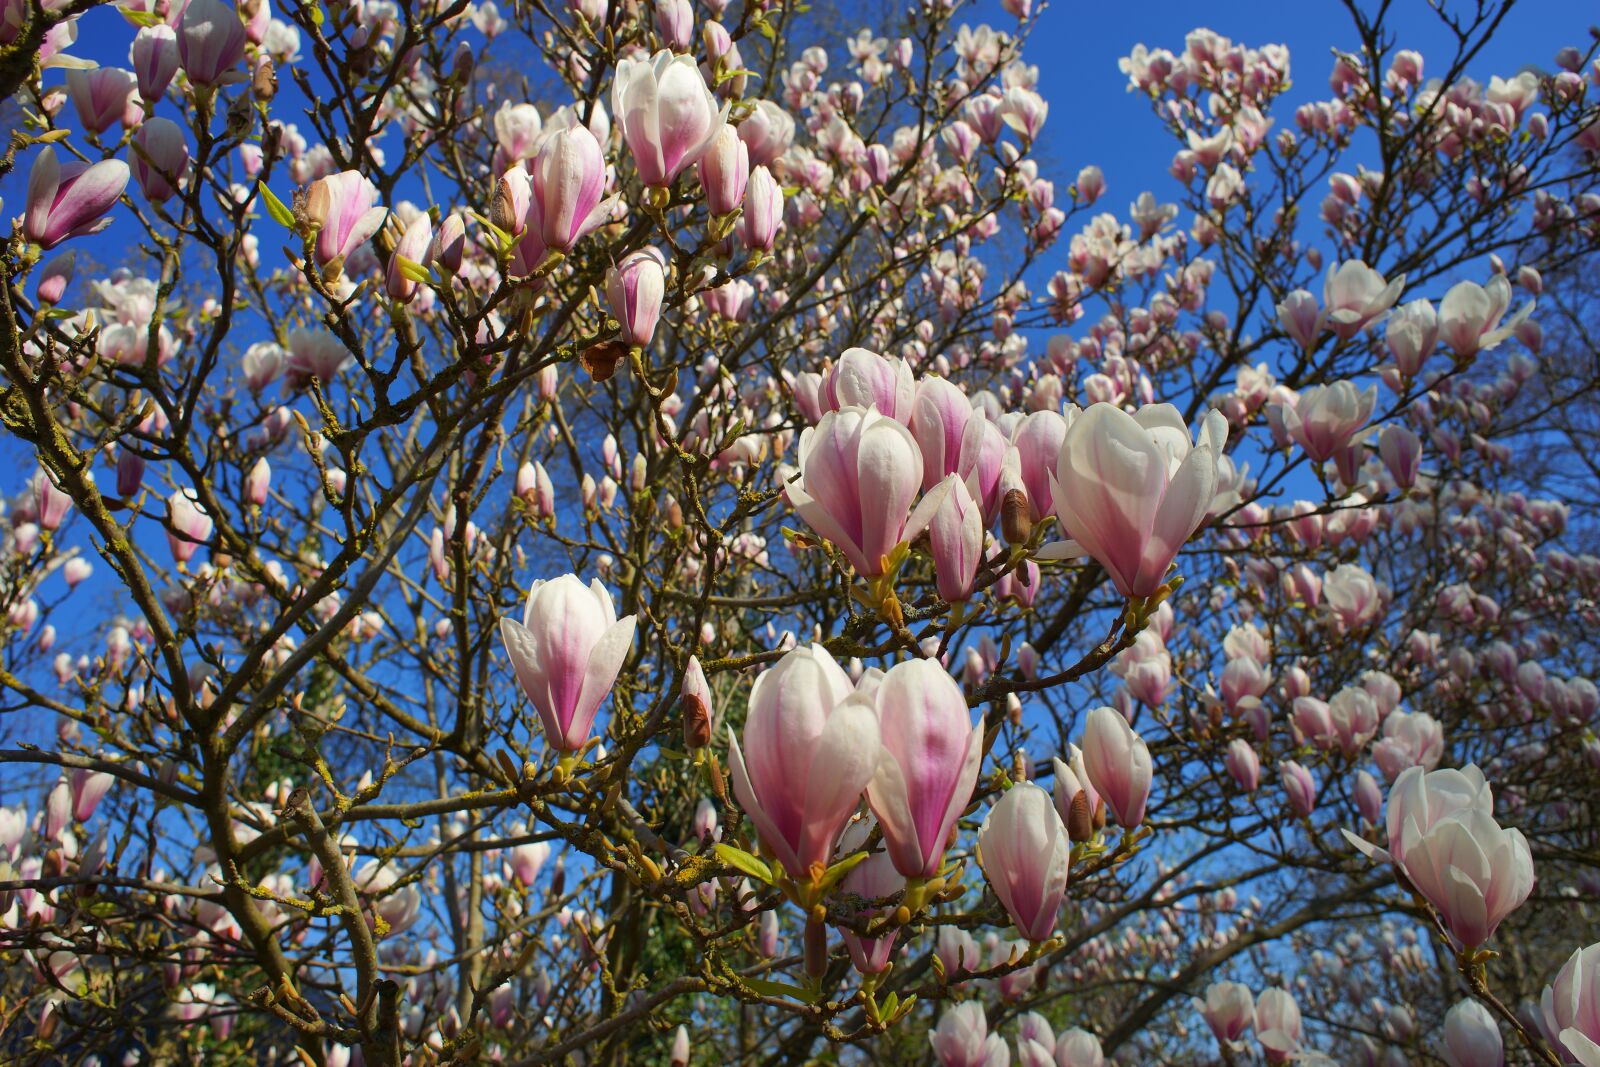 24mm F2.8 sample photo. Magnolia, tulip magnolia, early photography